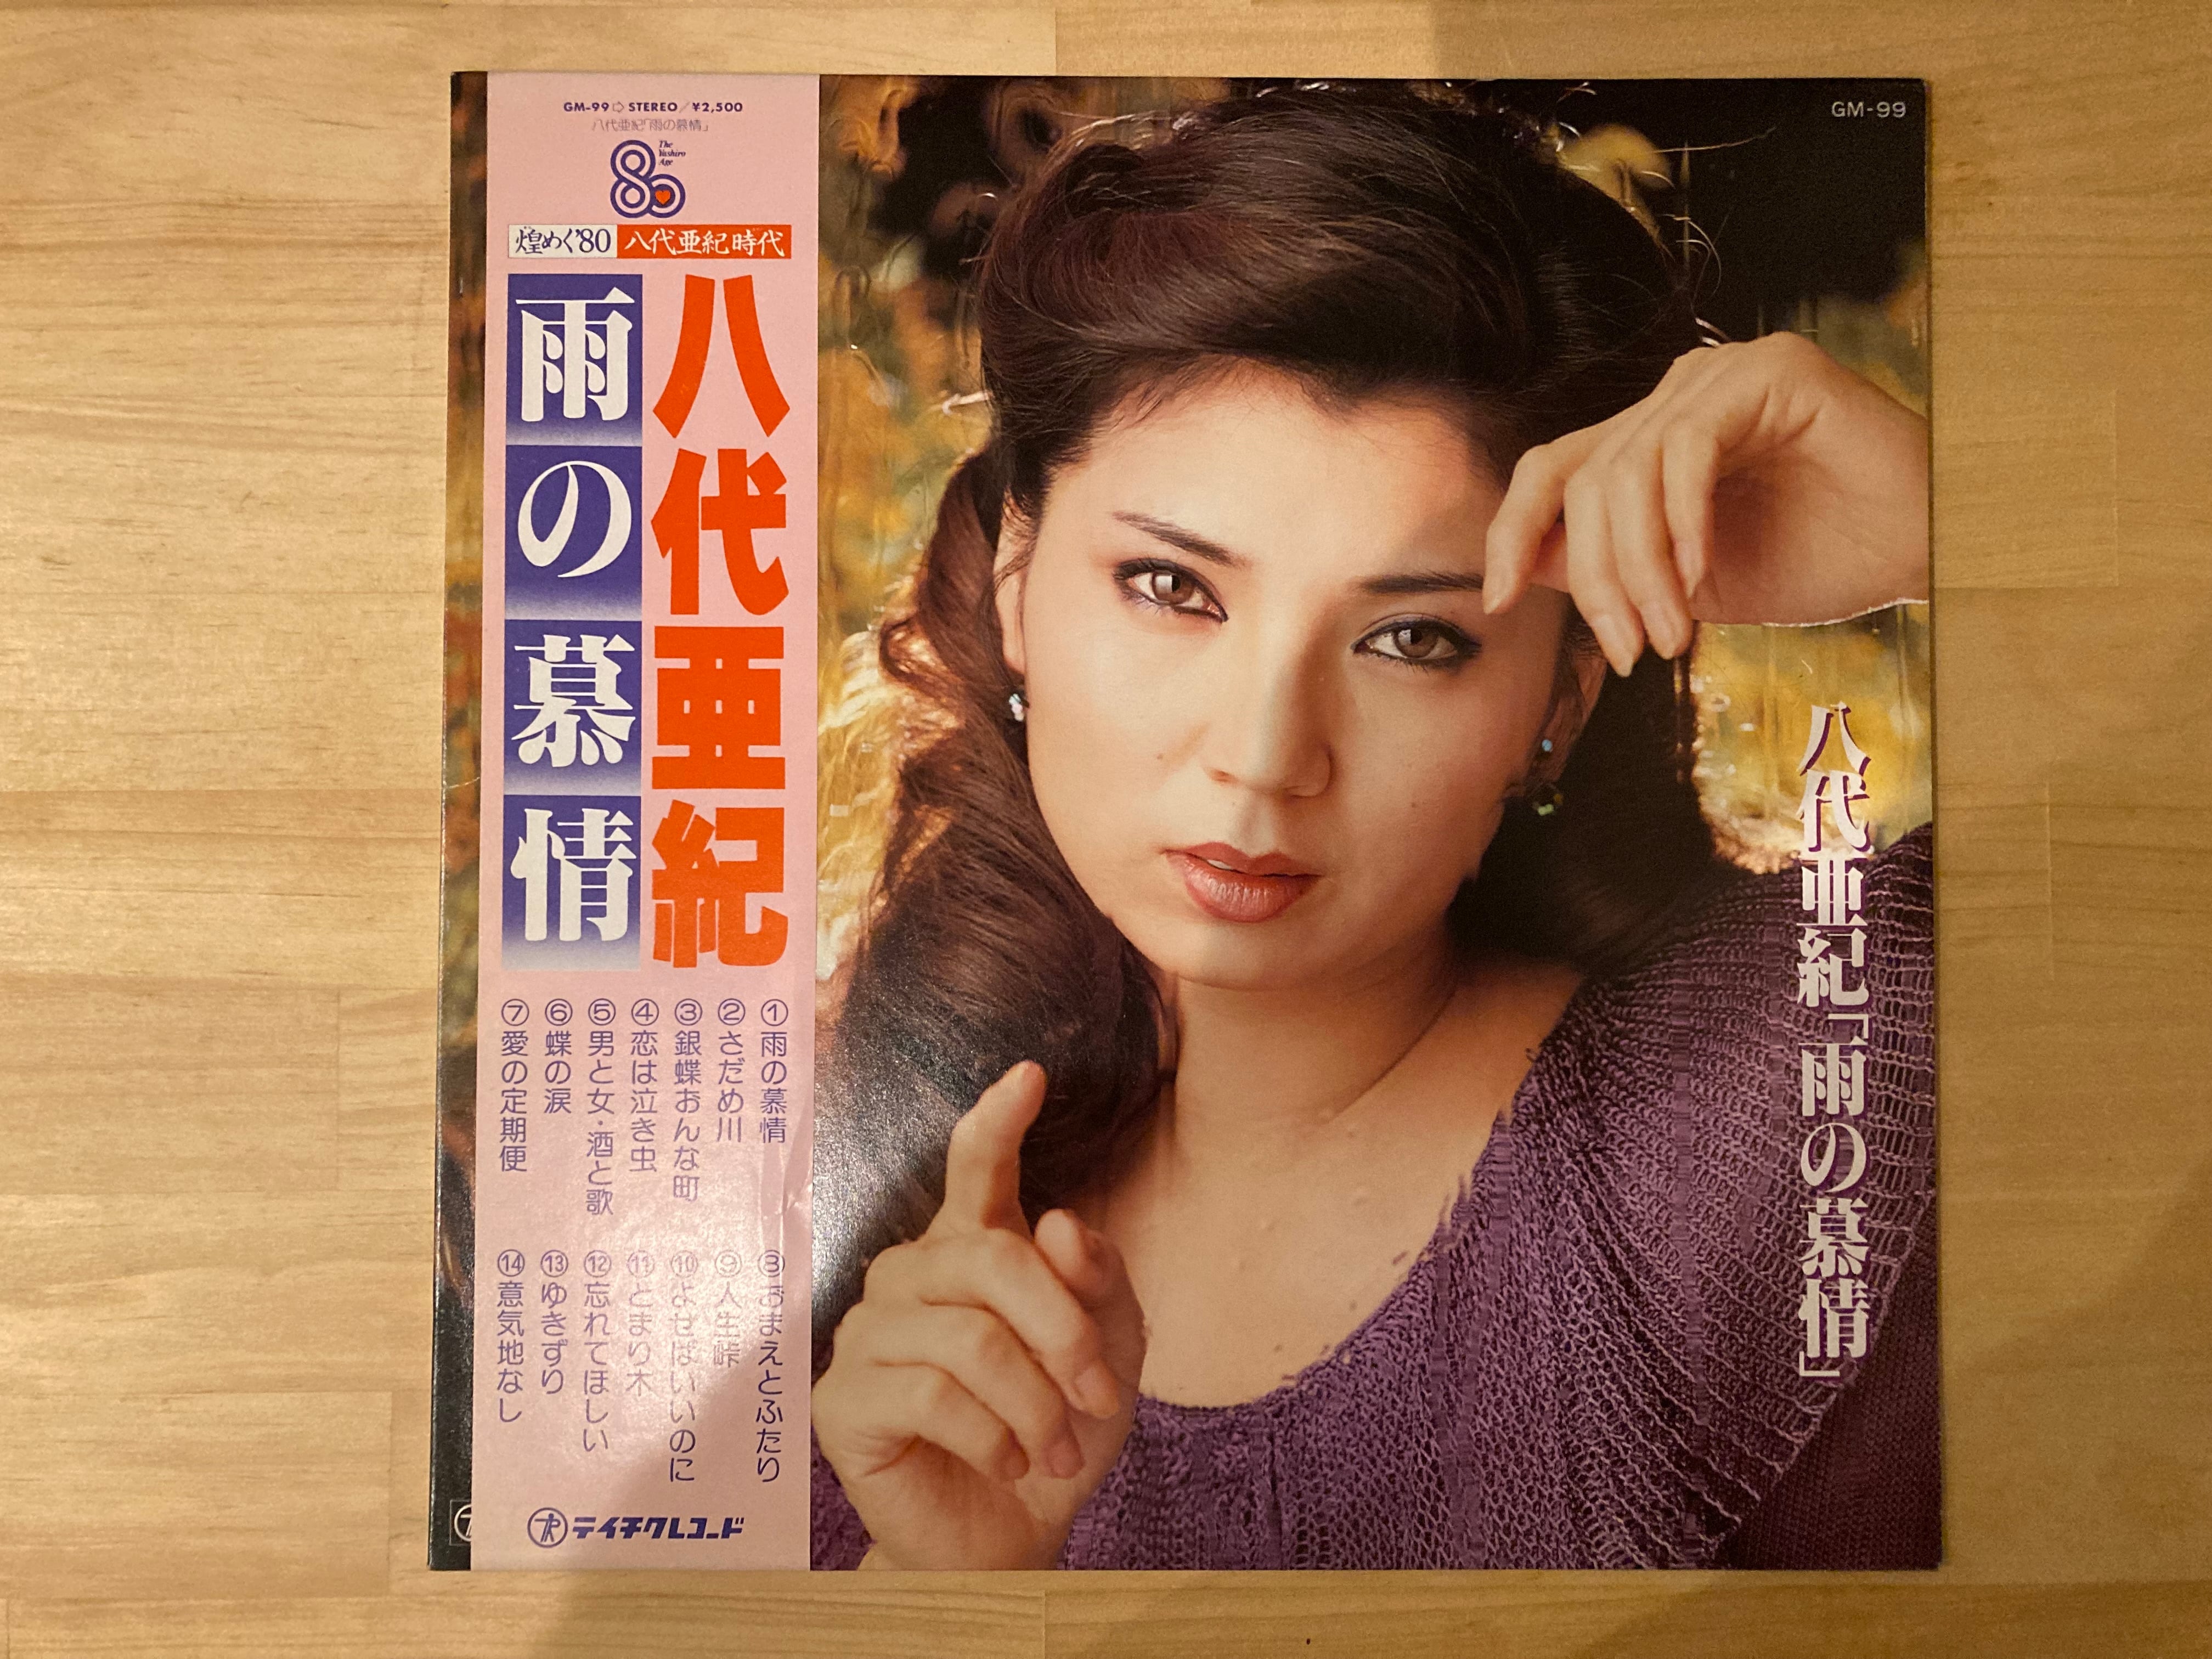 八代亜紀 / 雨の慕情 | sixteen records (シックスティーンレコード)